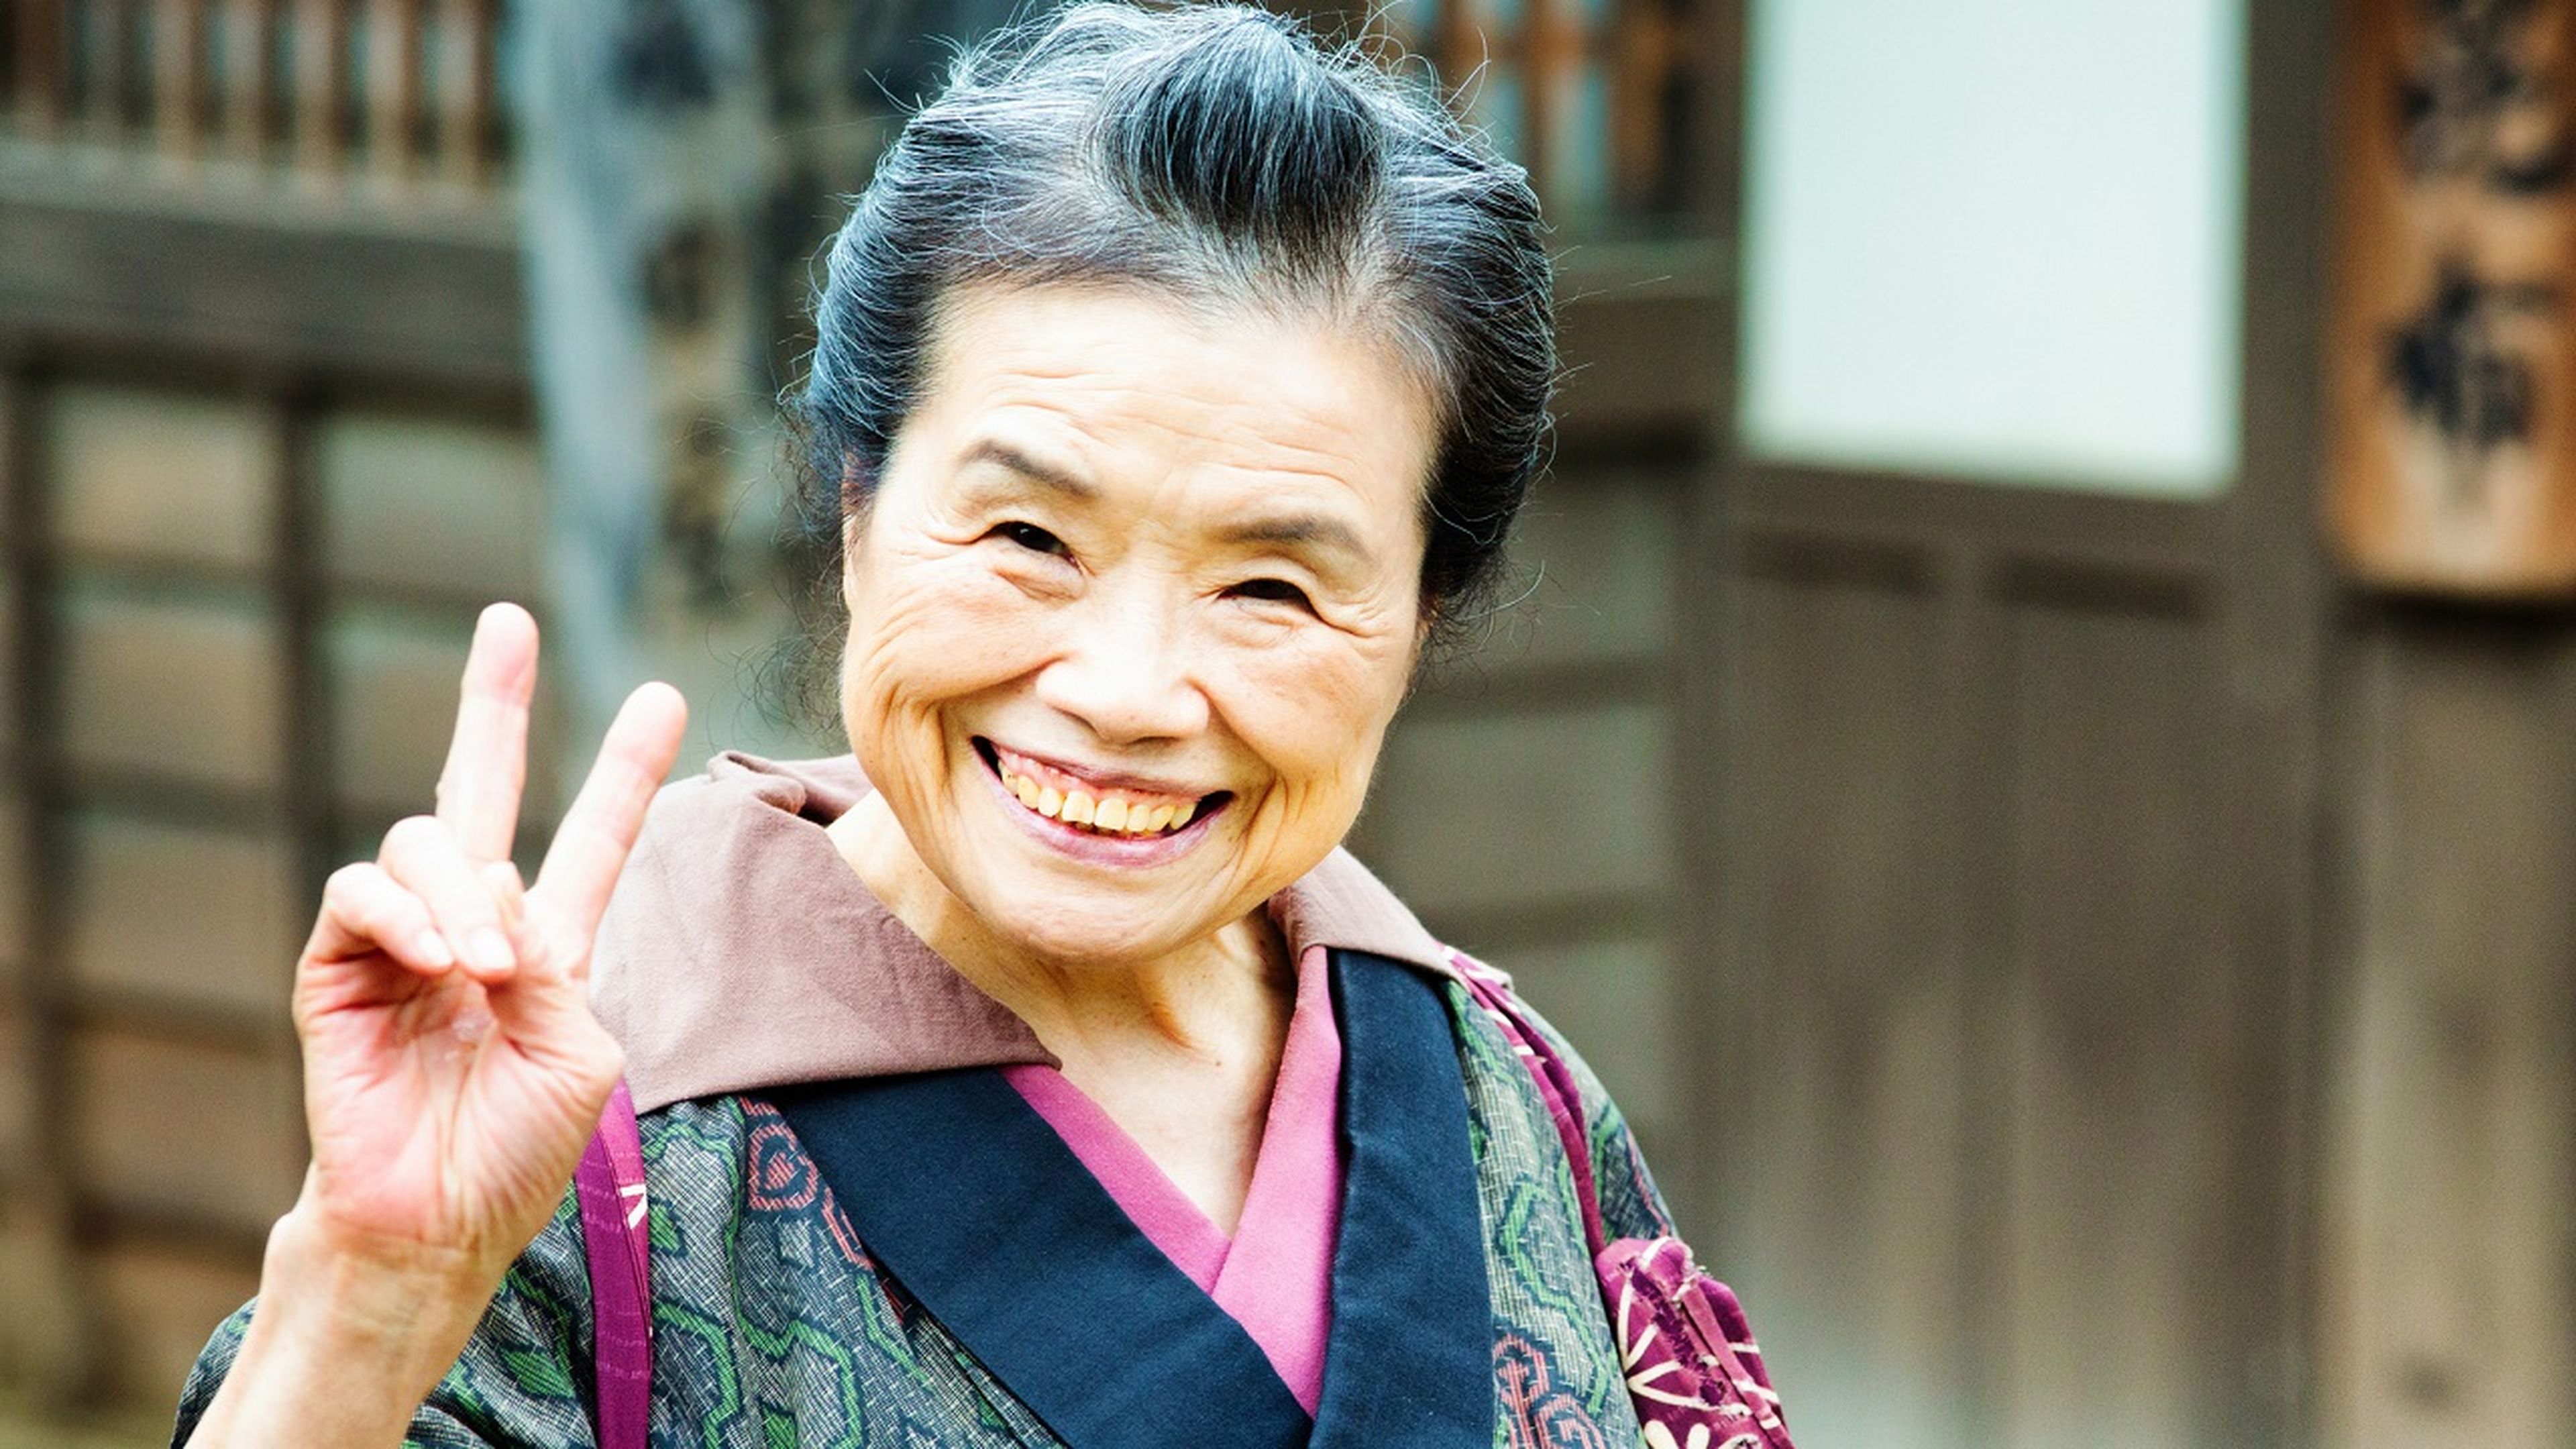 Las cuatro reglas japonesas para vivir 100 años originales de Okinawa